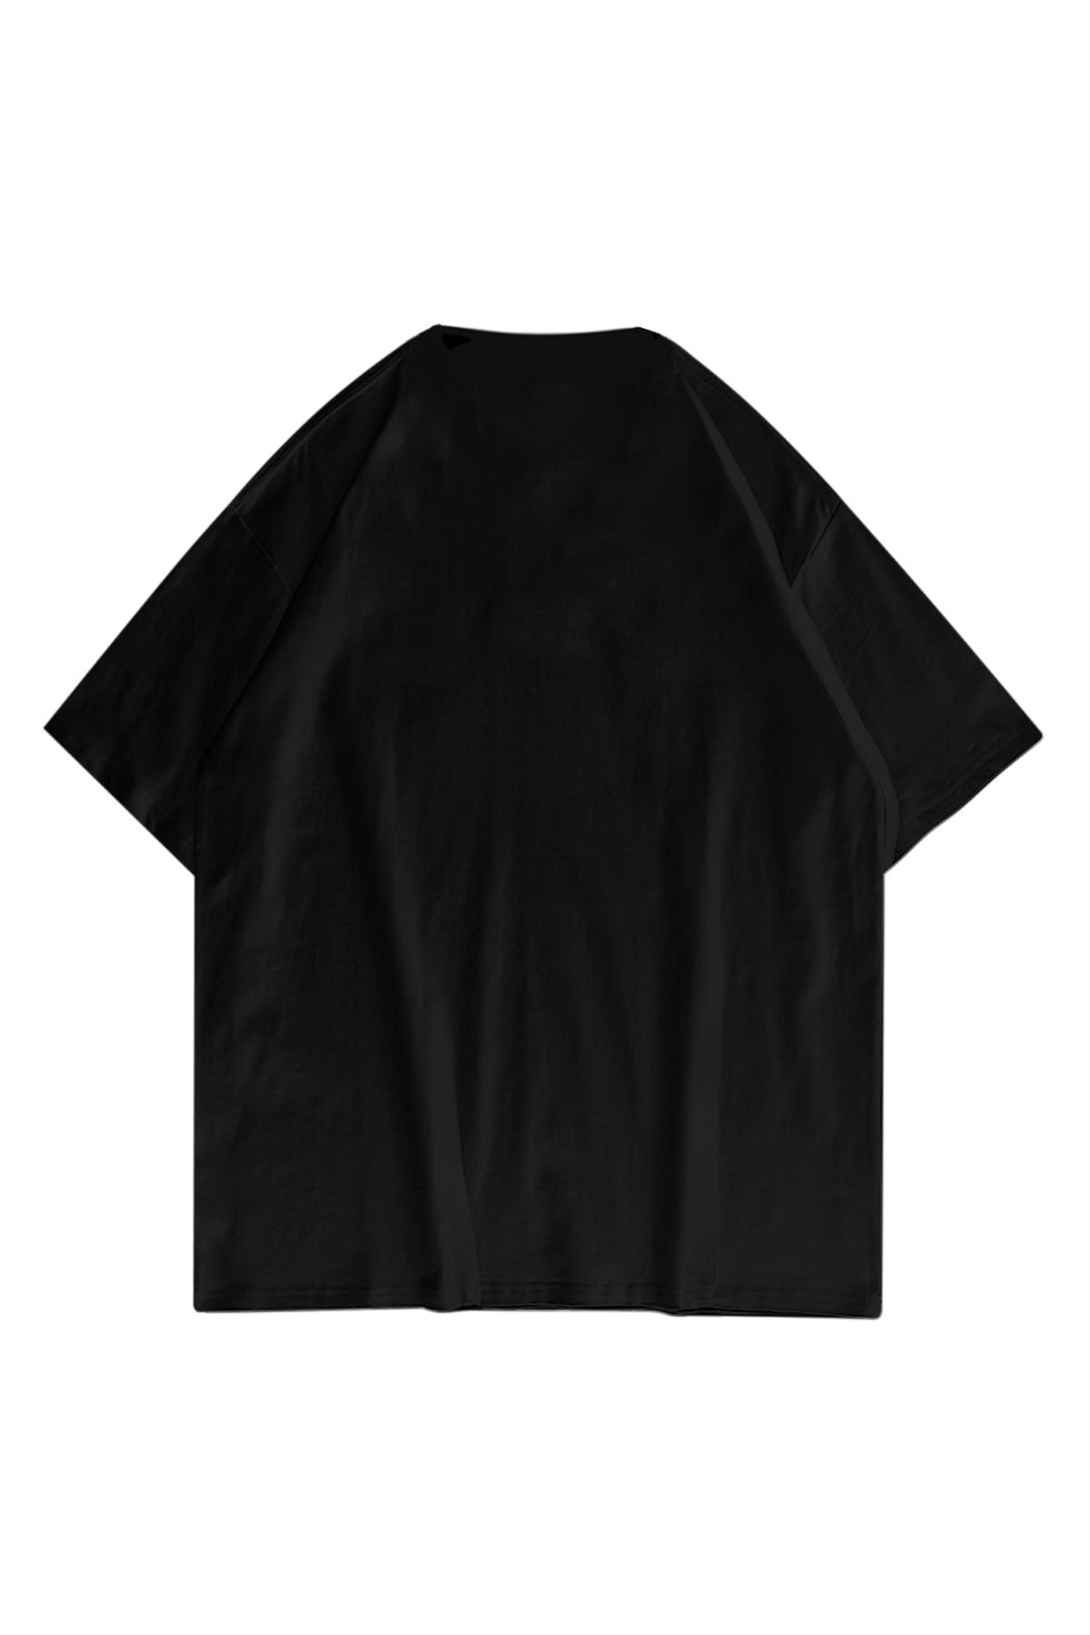 Trendiz Unisex Ufo Travis Scott Siyah Tshirt